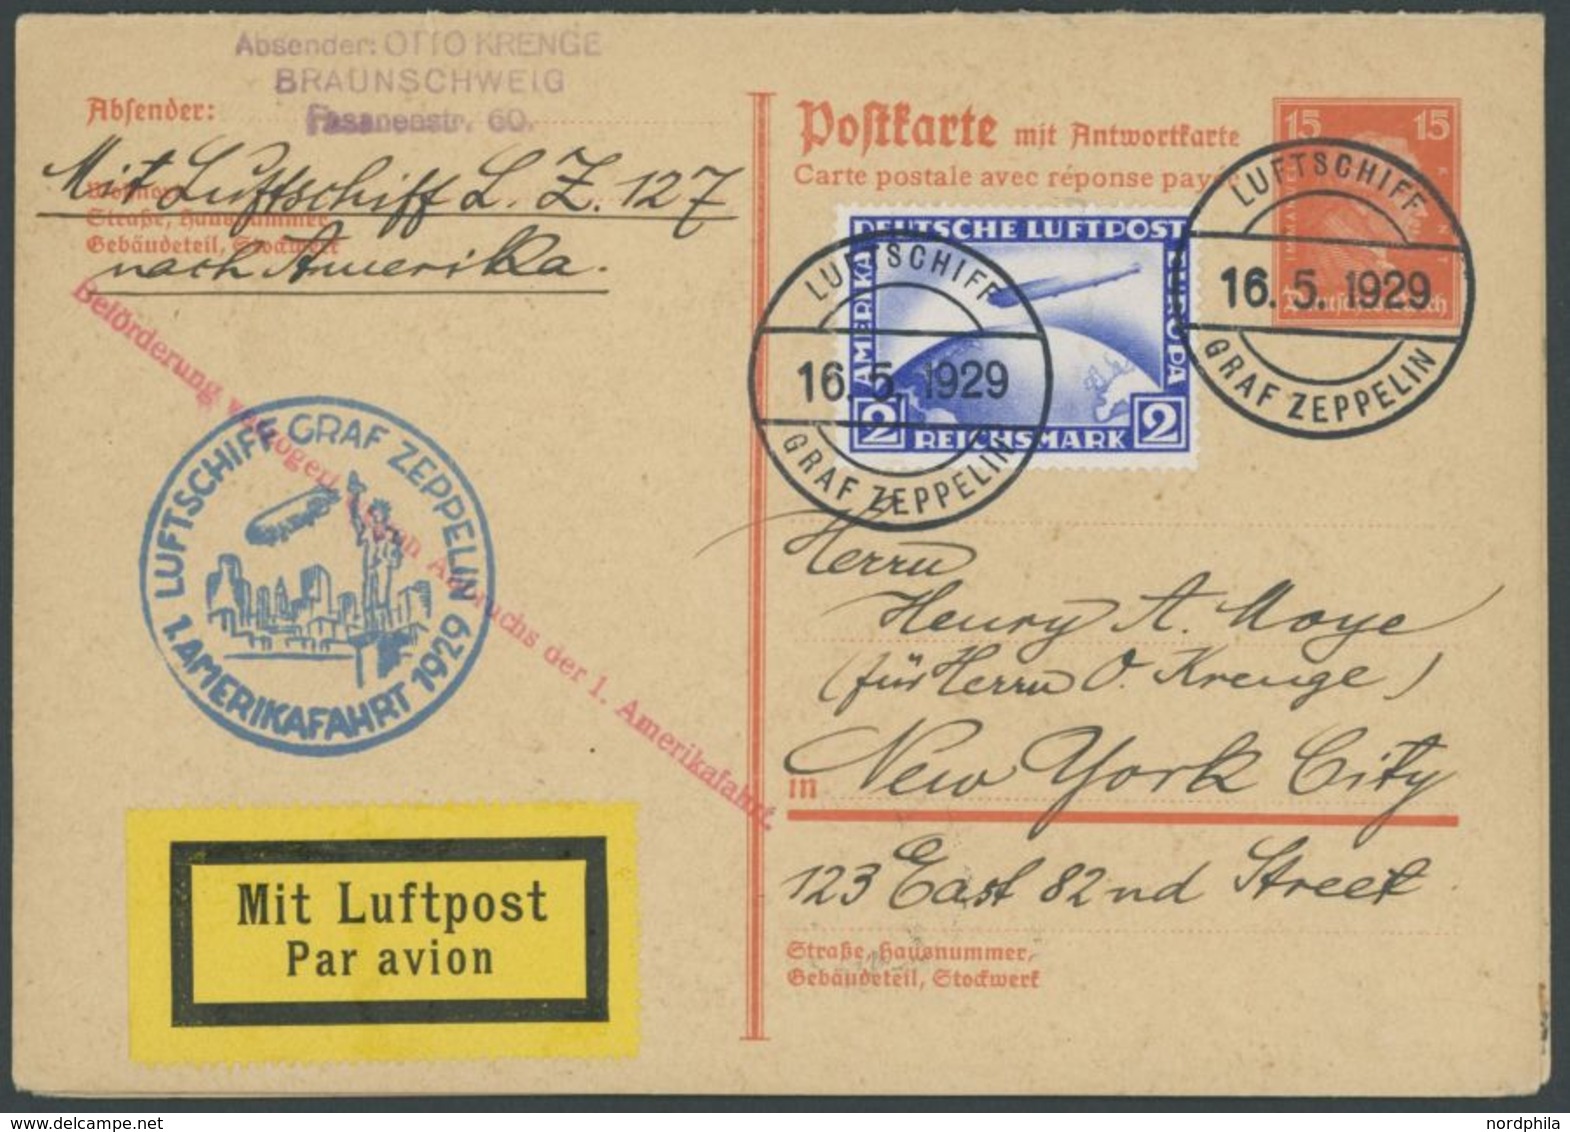 1929, Amerikafahrt, 15 Pf. Ganzsachenkarte (P 173) Als Bordpost Mit 2 RM, Verzögerungsstempel Auf Anhängender Karte Mit  - Airmail & Zeppelin